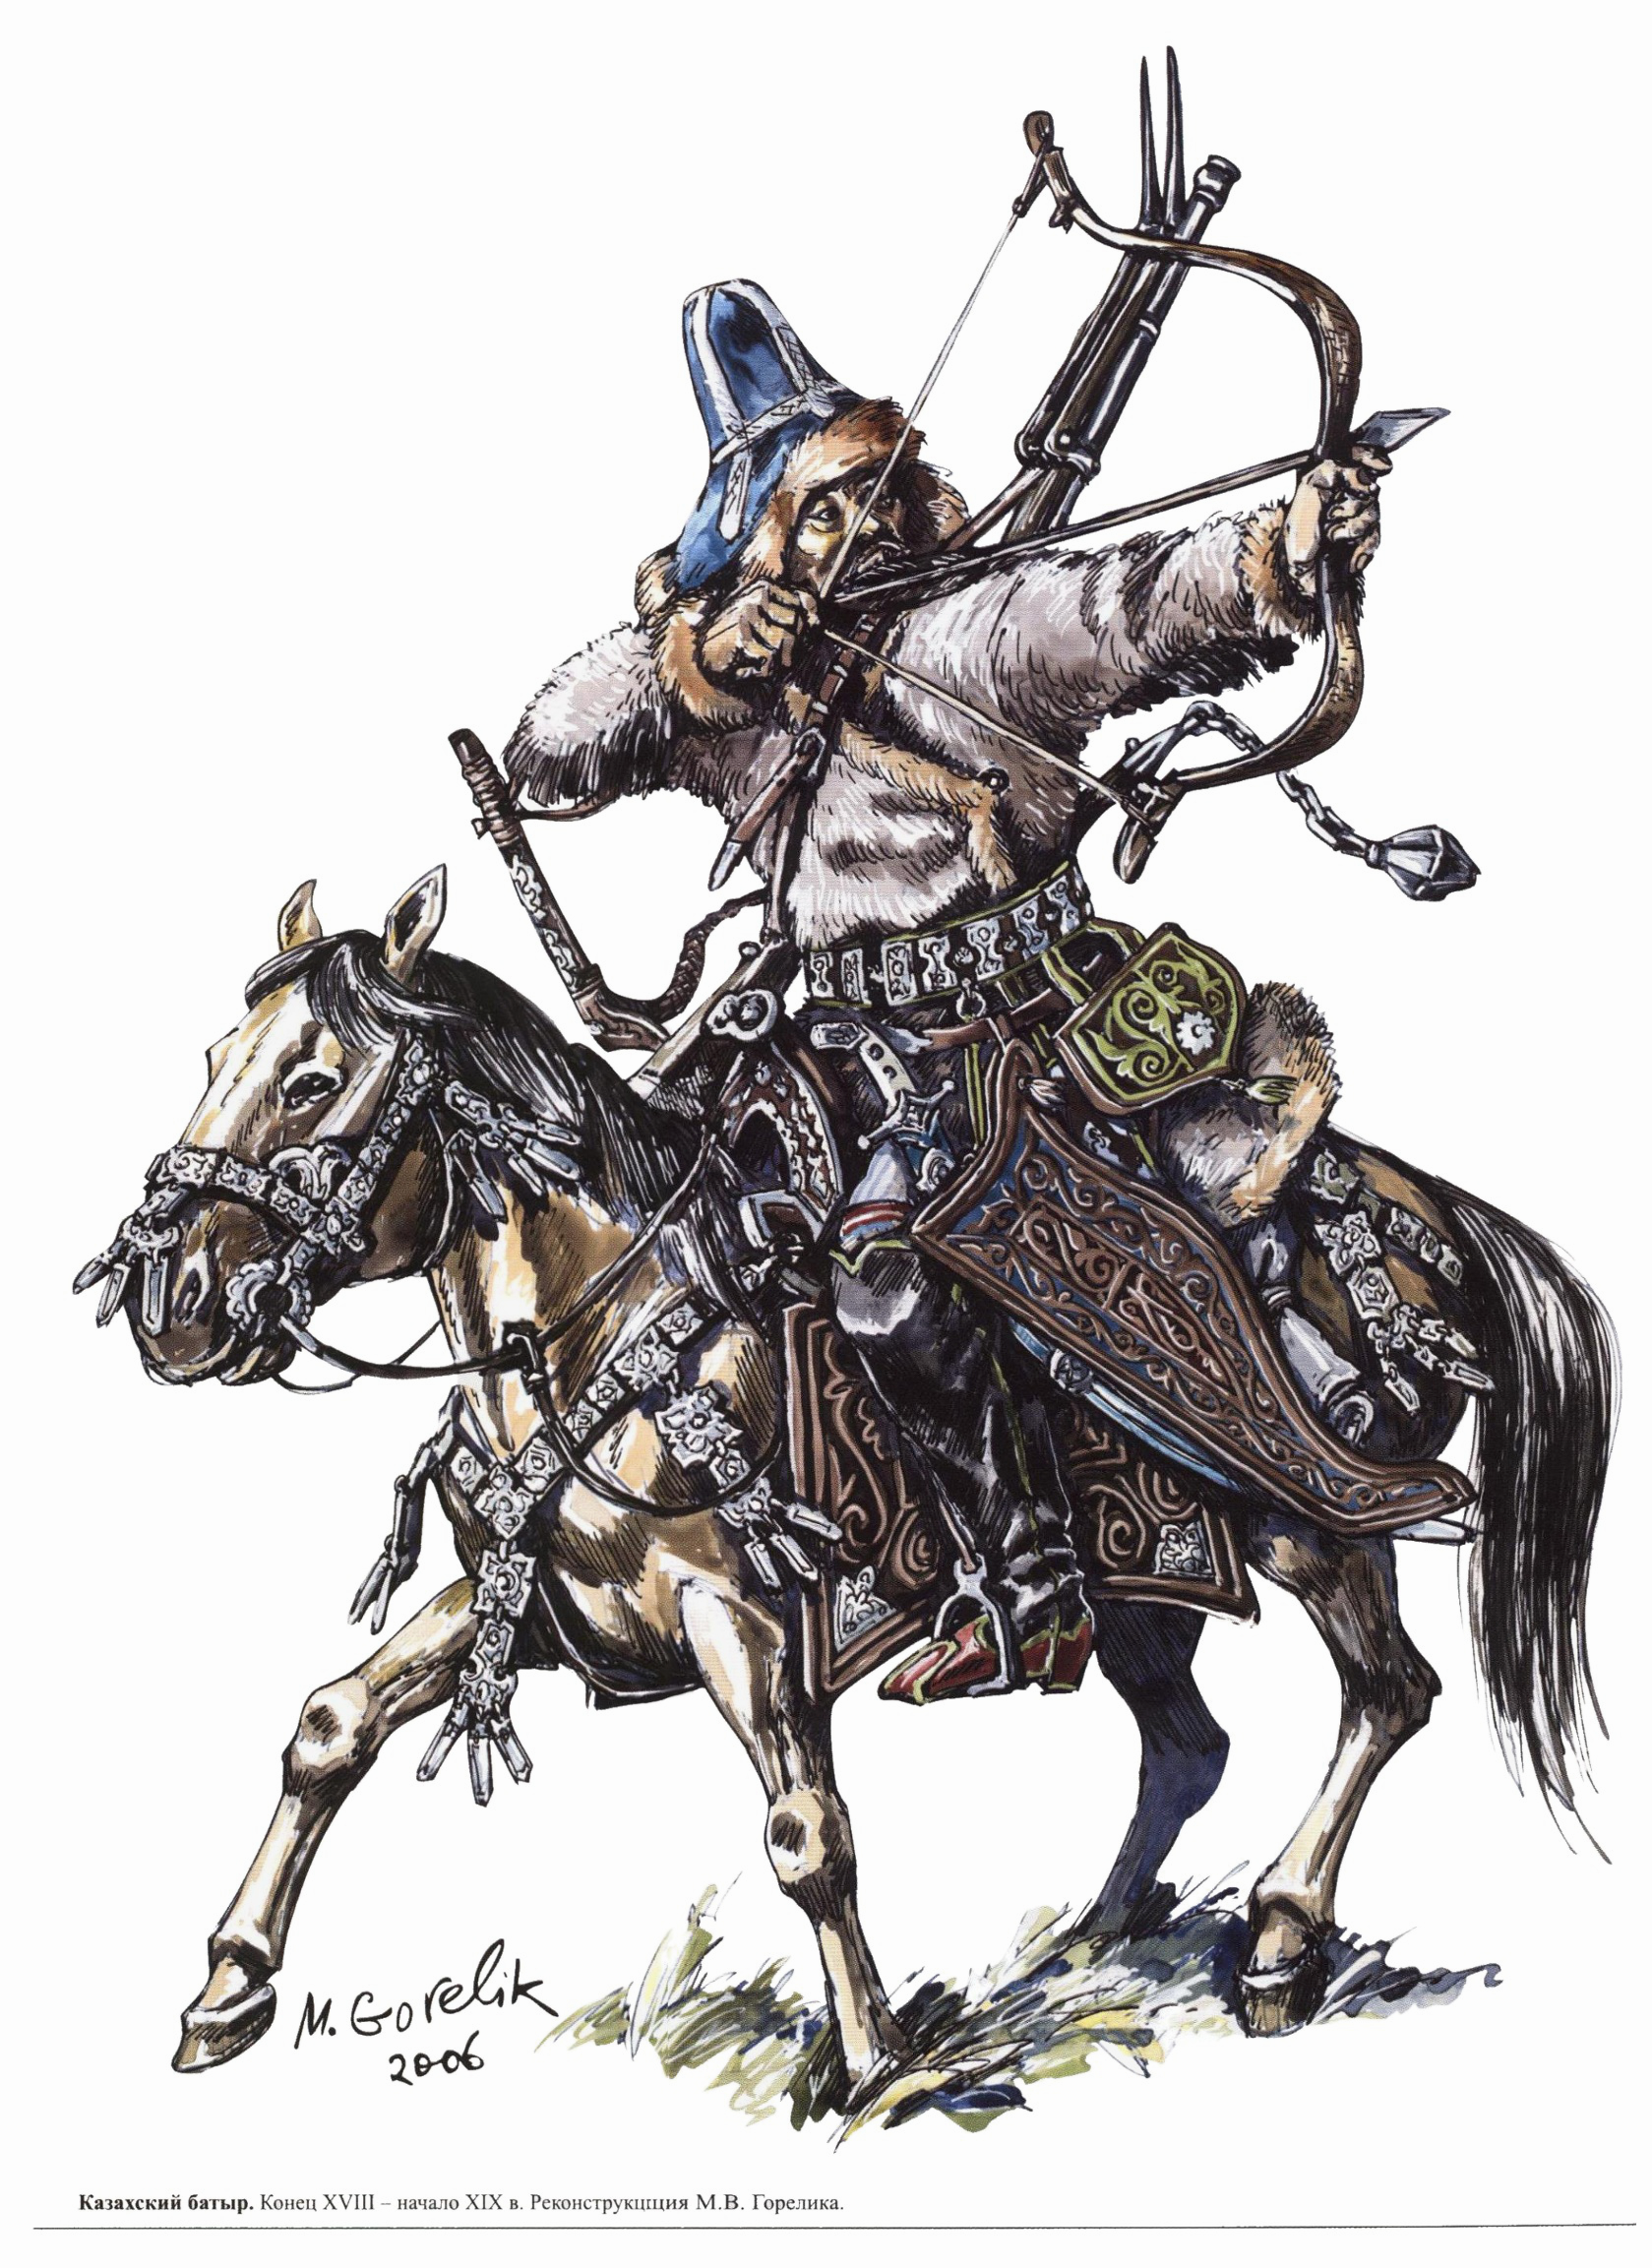 Татарские воины 16 века Горелик. Ойраты джунгары. Тяжеловооруженный монгольский воин Горелик.